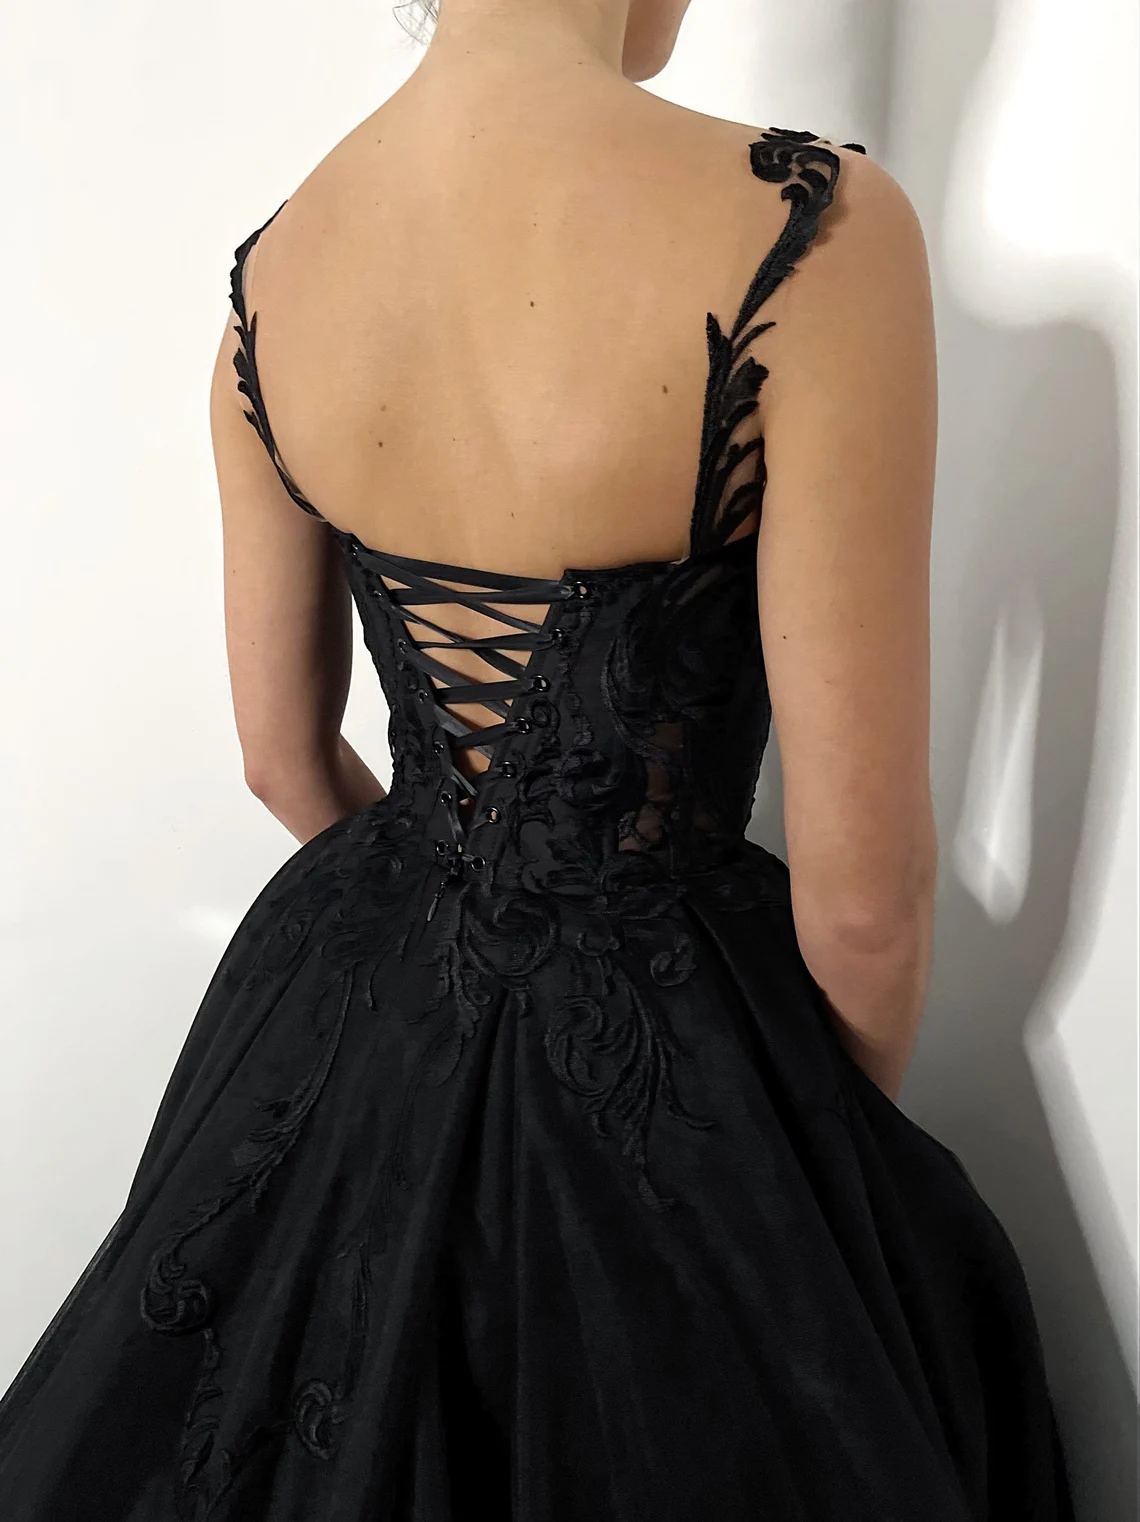 Black gothic lace corset strap wedding dress, long train alternative bride dress,DS9576